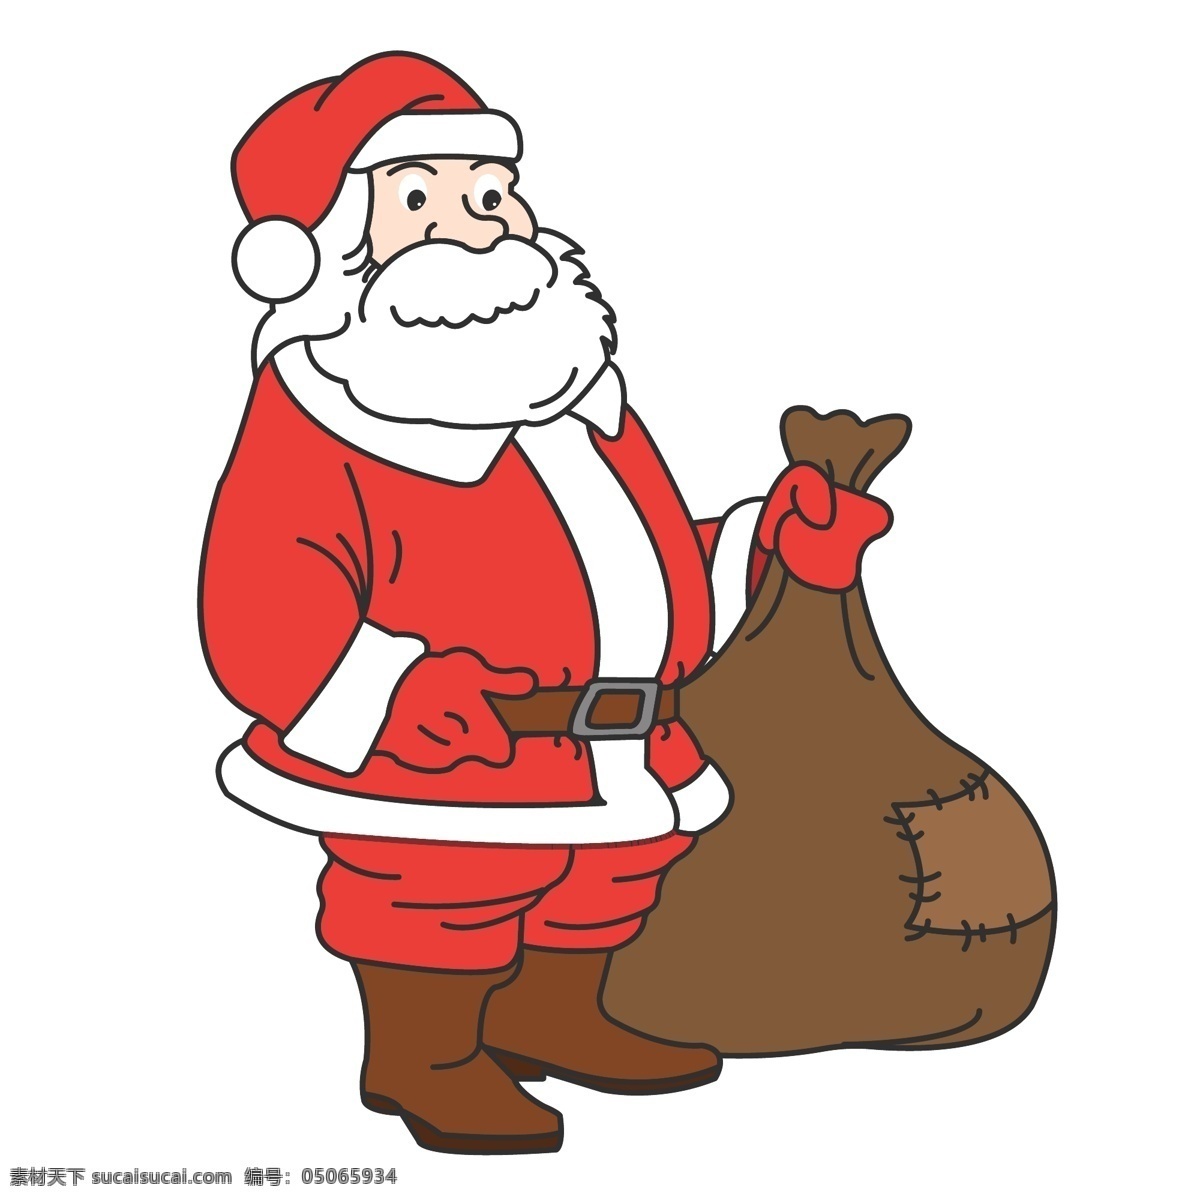 手绘 矢量 圣诞节 圣诞老人 可爱 礼物 卡通人物 圣诞夜 平安 小熊 祝福